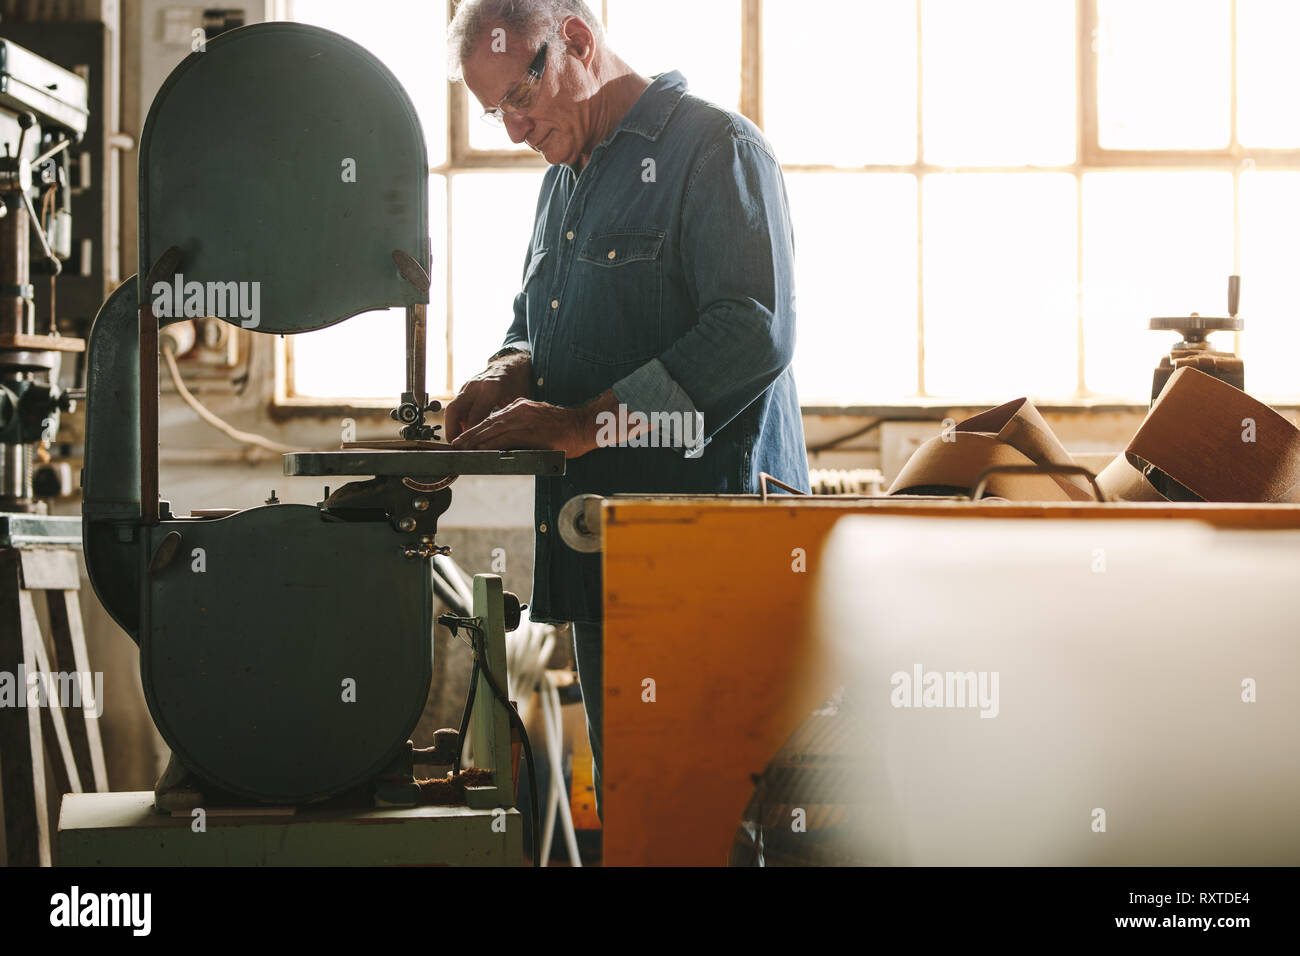 Ältere Arbeitnehmer arbeiten an bandsäge Maschine in seiner Werkstatt. Tischler Schneiden von Holz auf der Maschine in der Schreinerei. Stockfoto